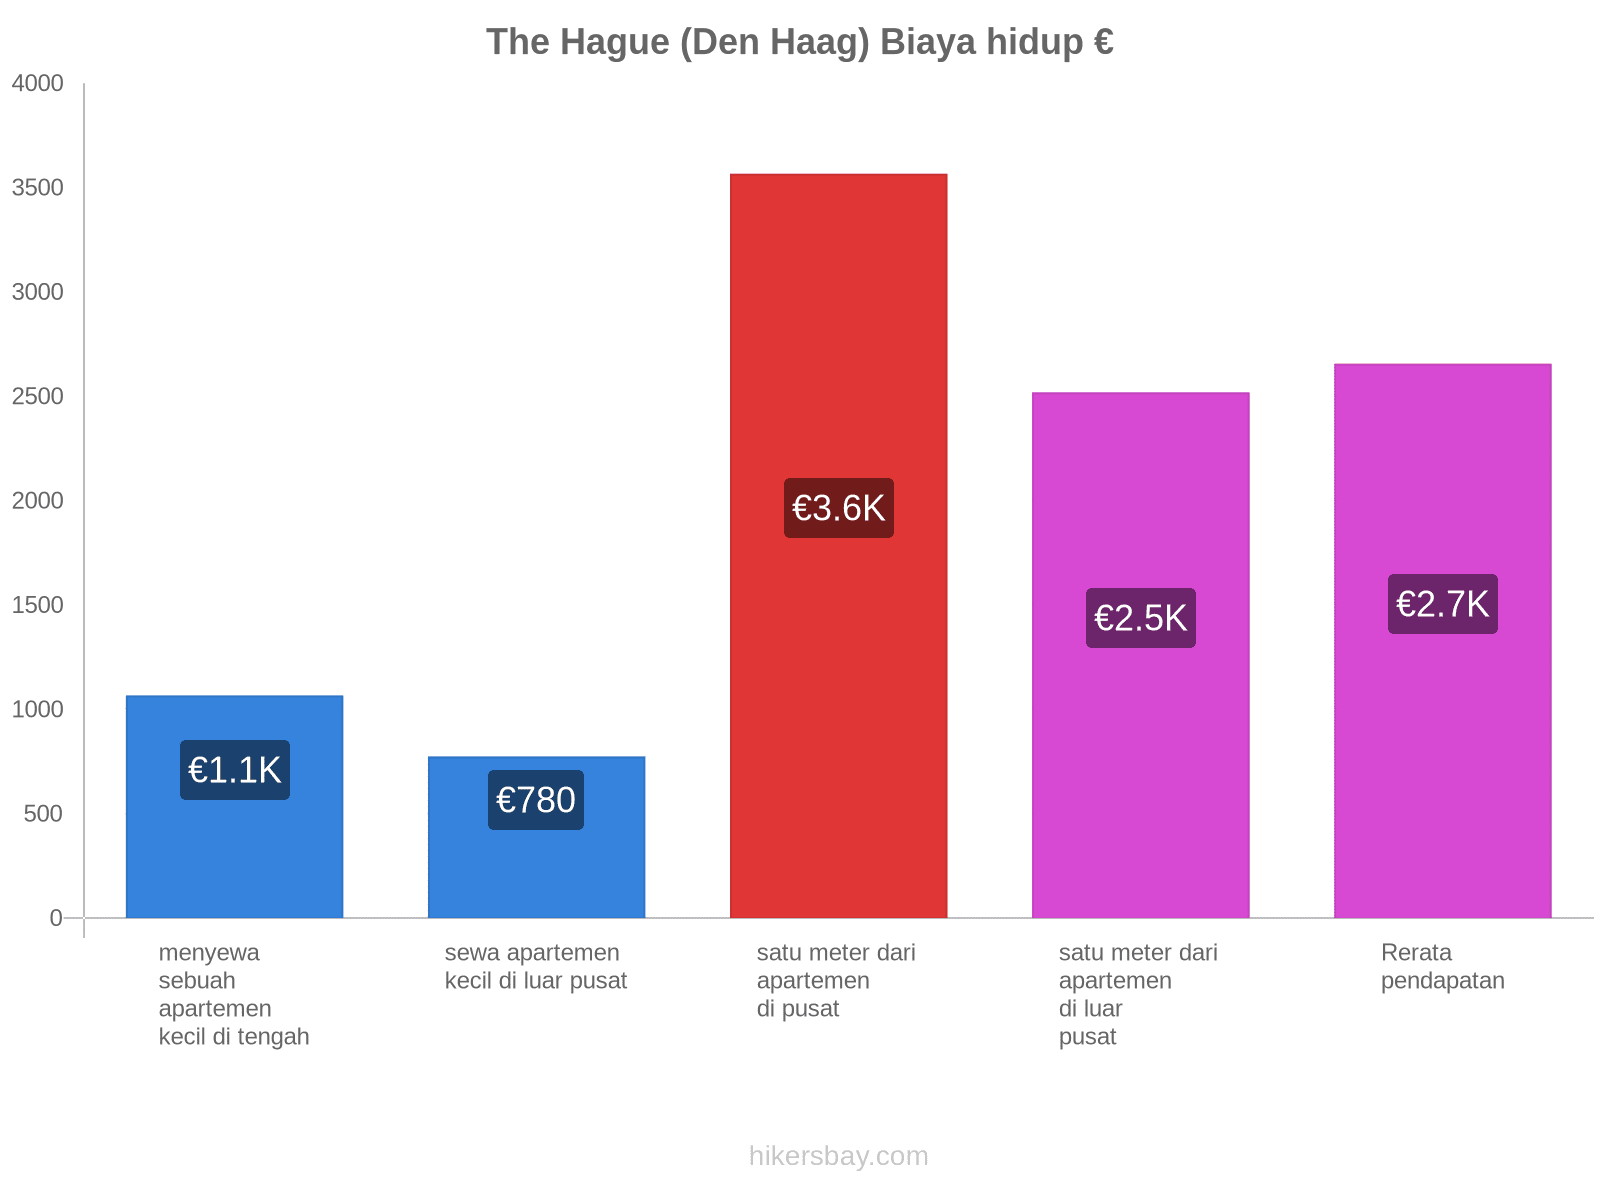 The Hague (Den Haag) biaya hidup hikersbay.com